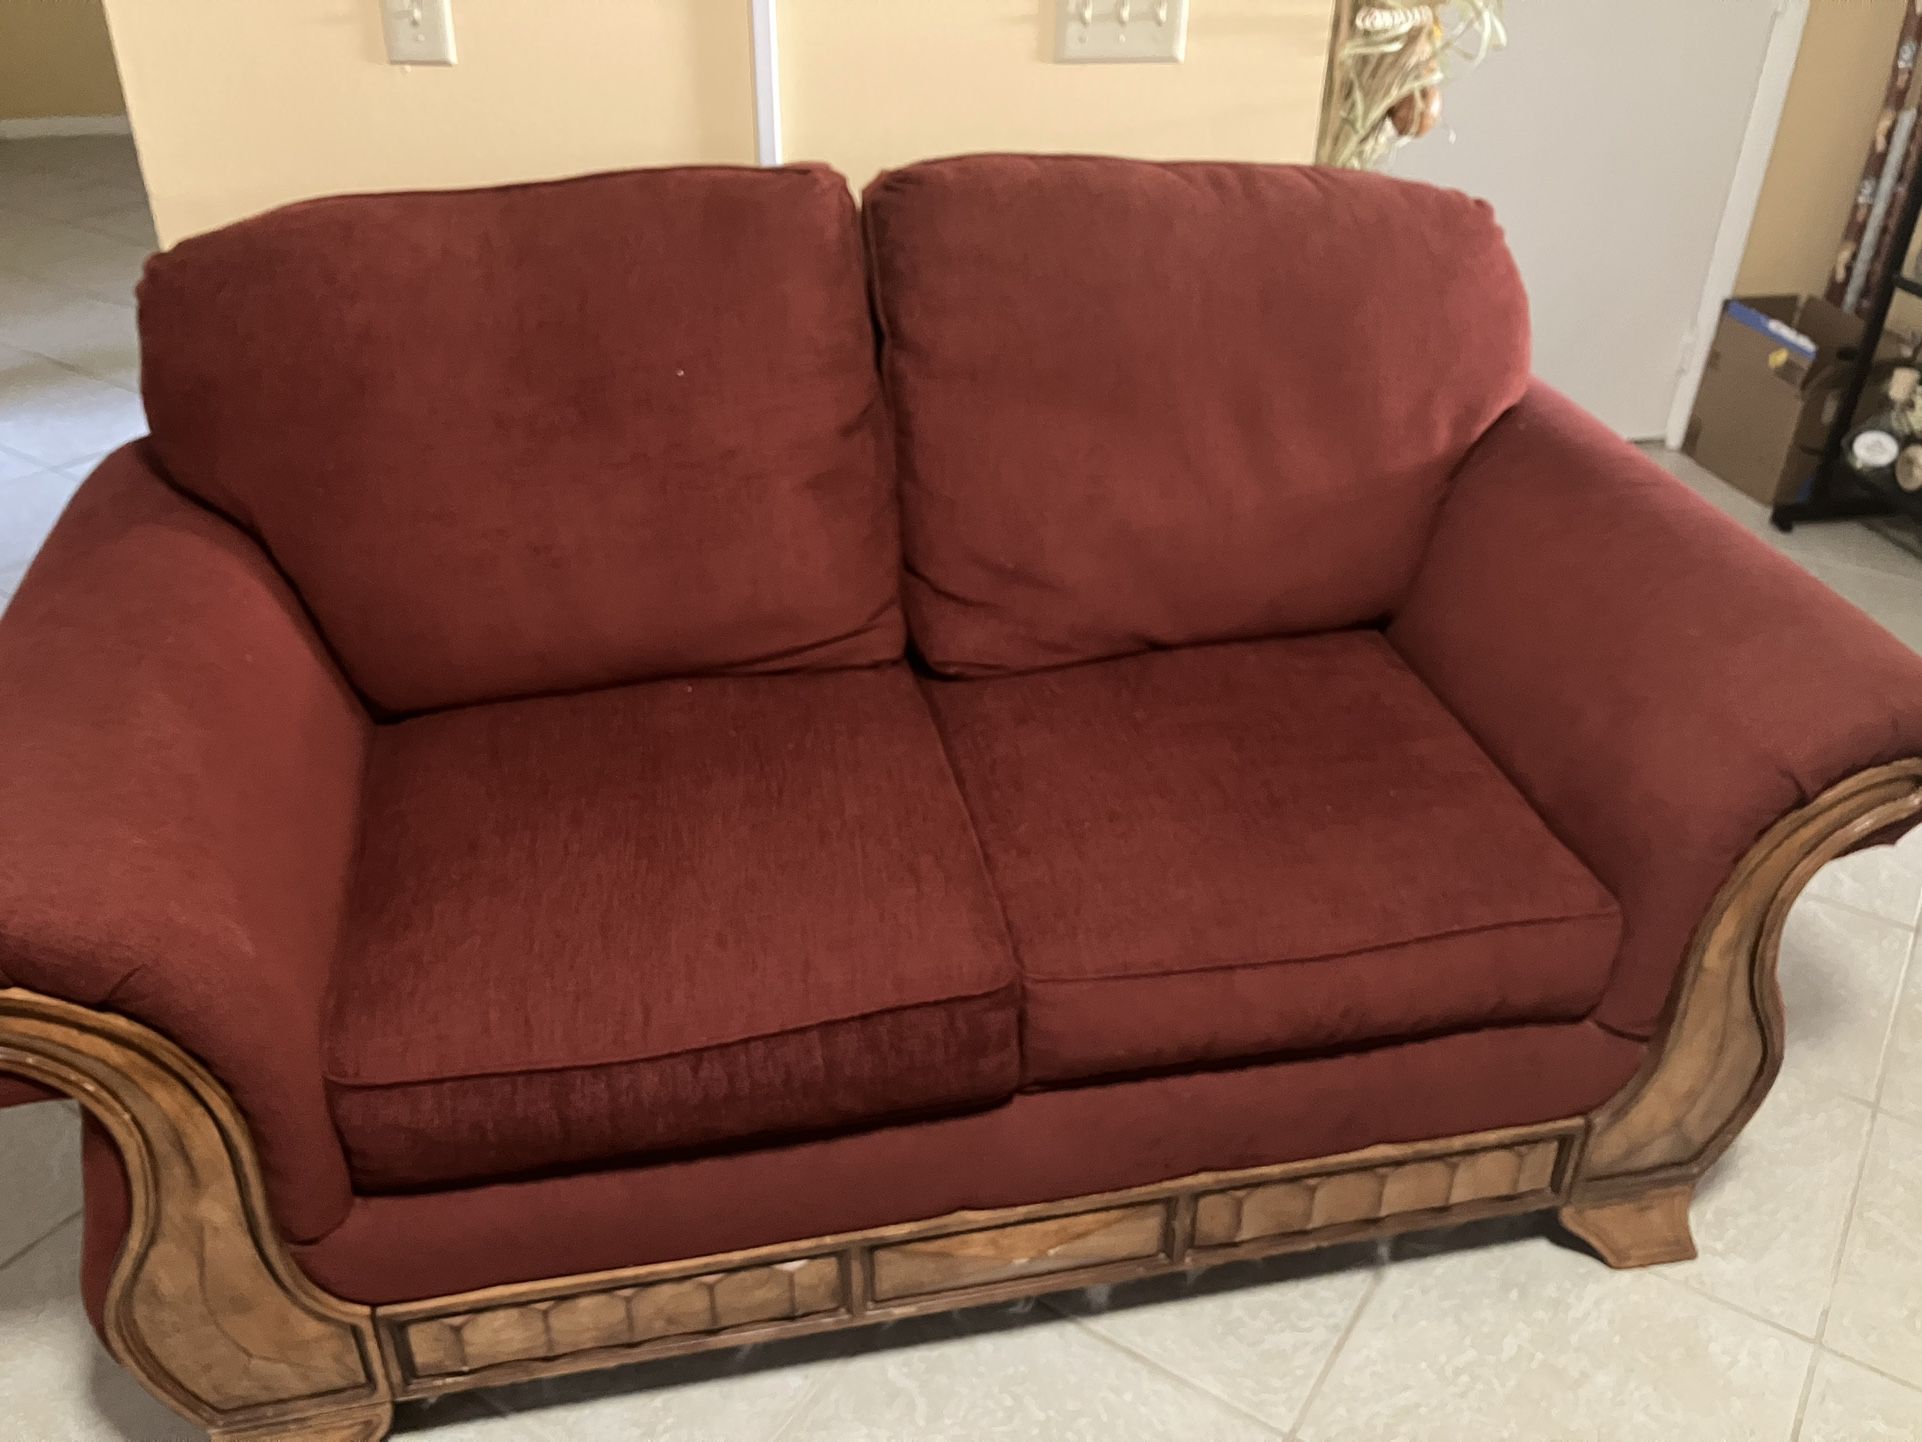 Sofa $60